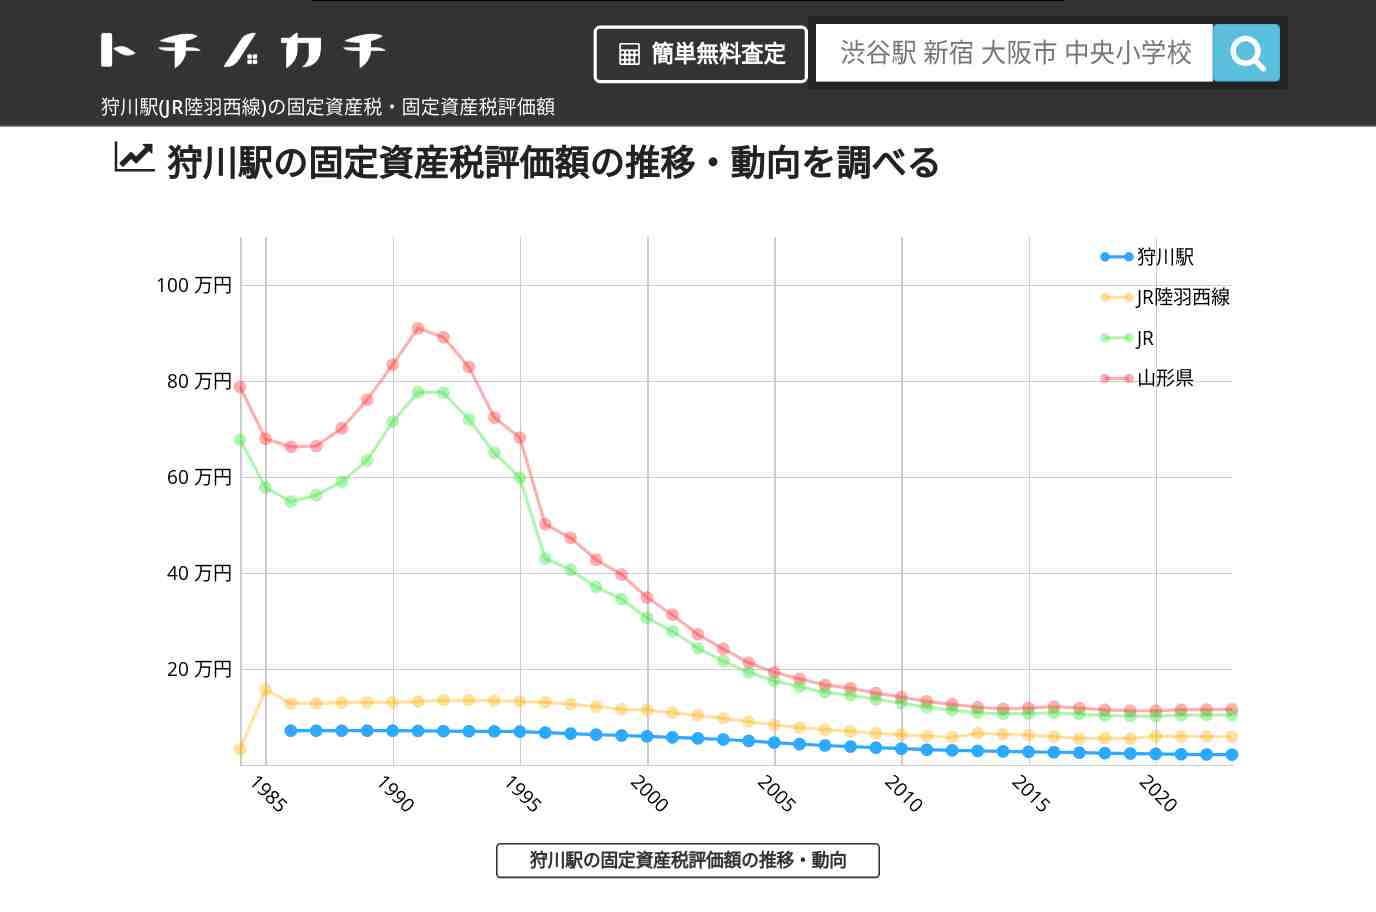 狩川駅(JR陸羽西線)の固定資産税・固定資産税評価額 | トチノカチ